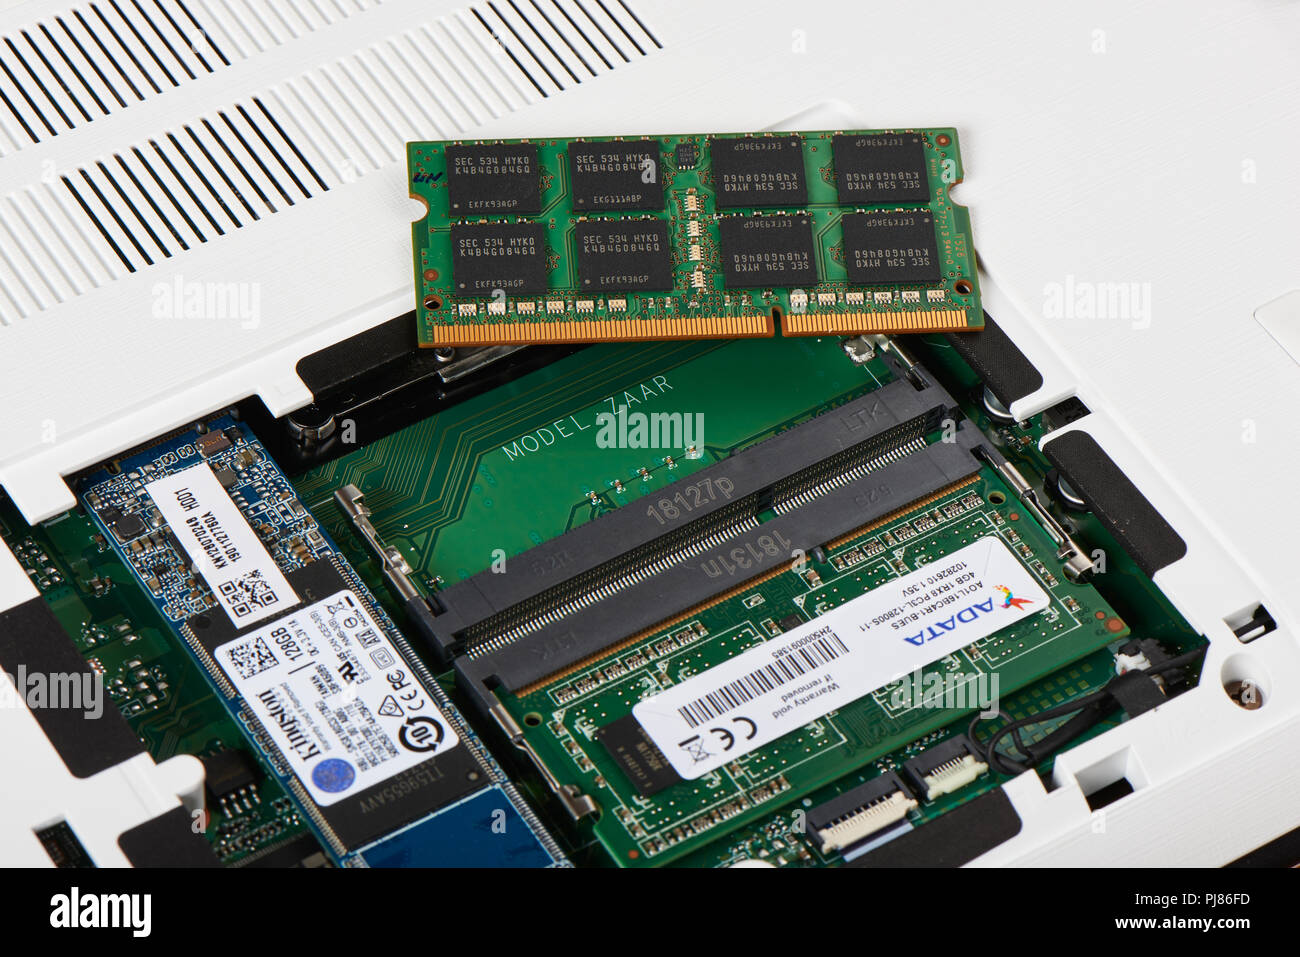 Gimpo-si, Korea - Juli 10, 2018: Access Panel mit DDR3L-RAM und M.2 SATA-SSD  auf der Unterseite des Laptops, die RAM und SSD SATA M. 2 Steckplatz für  Festplatte Stockfotografie - Alamy